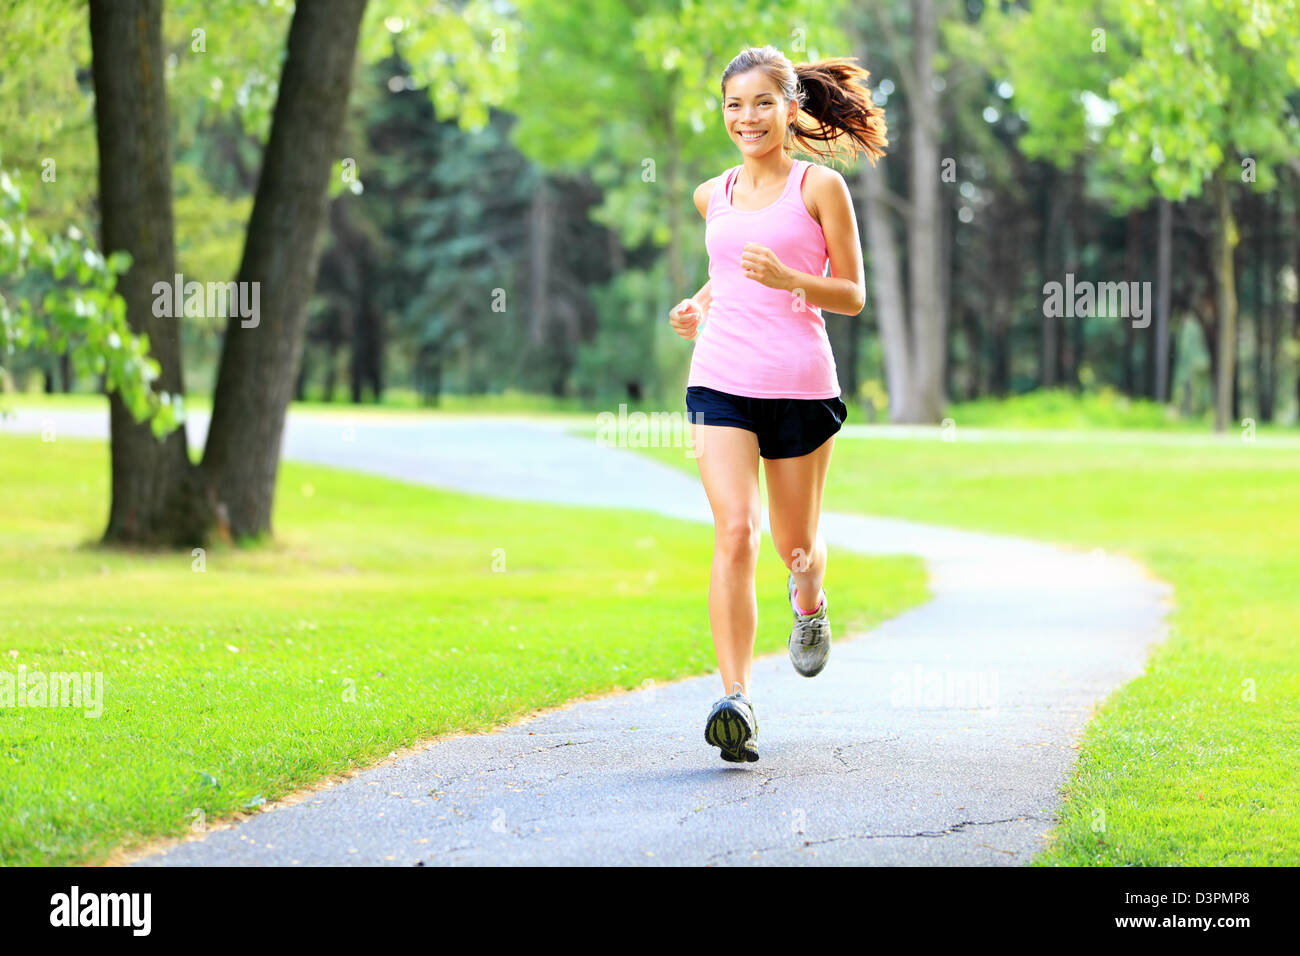 Happy Asian / Caucasian woman running in park sur journée d'été, avec du soleil dans les arbres verts Banque D'Images